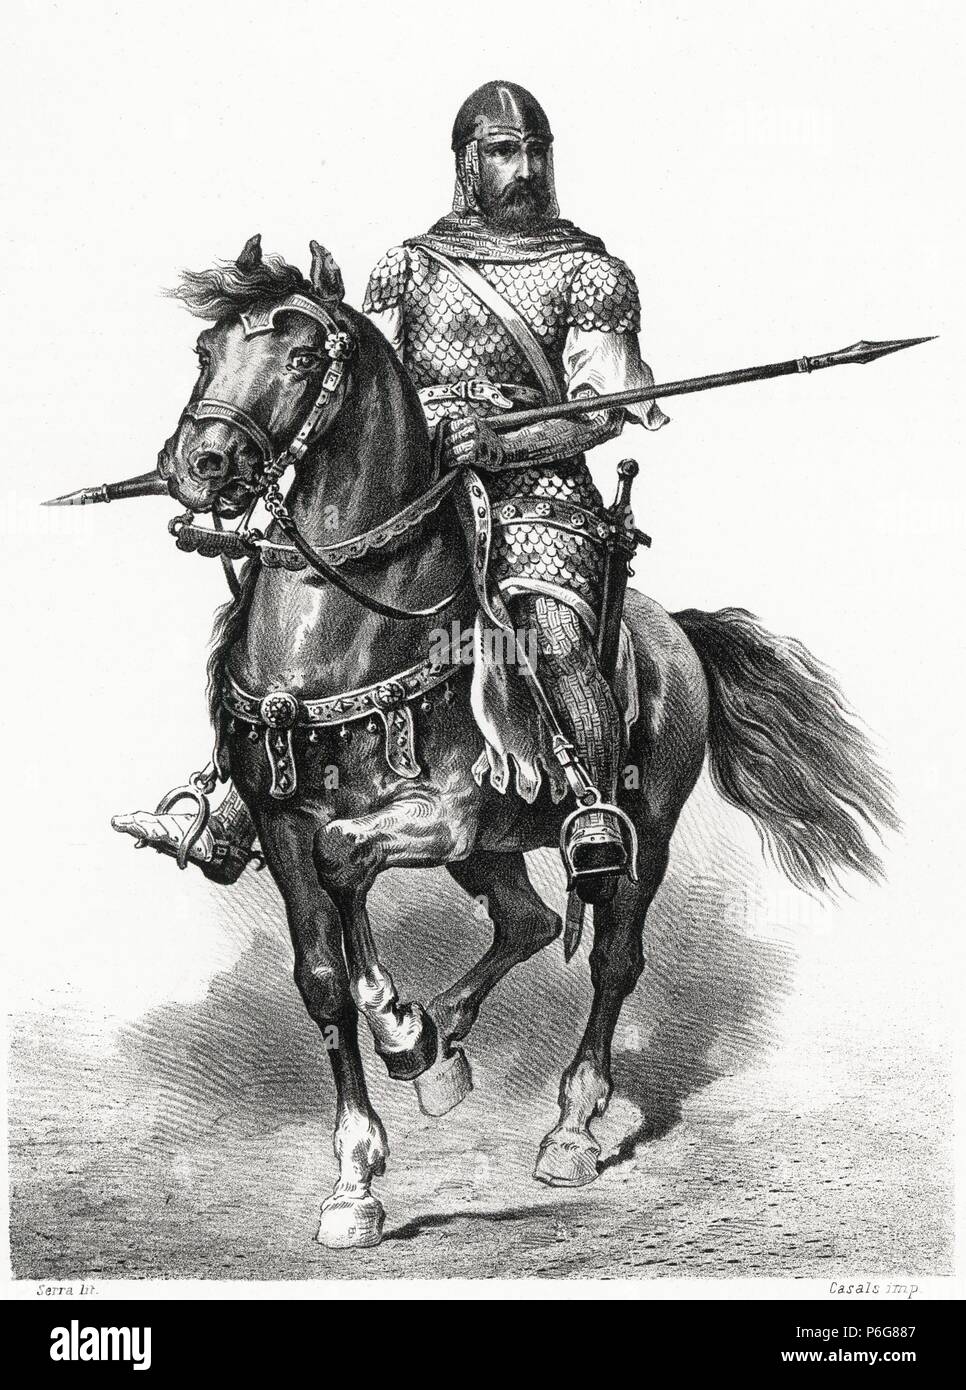 Historia de España. Rodrigo Díaz de Vivar, el Cid Campeador (1048-1099), a  lomos de su caballo Babieca. Grabado de 1872 Stock Photo - Alamy